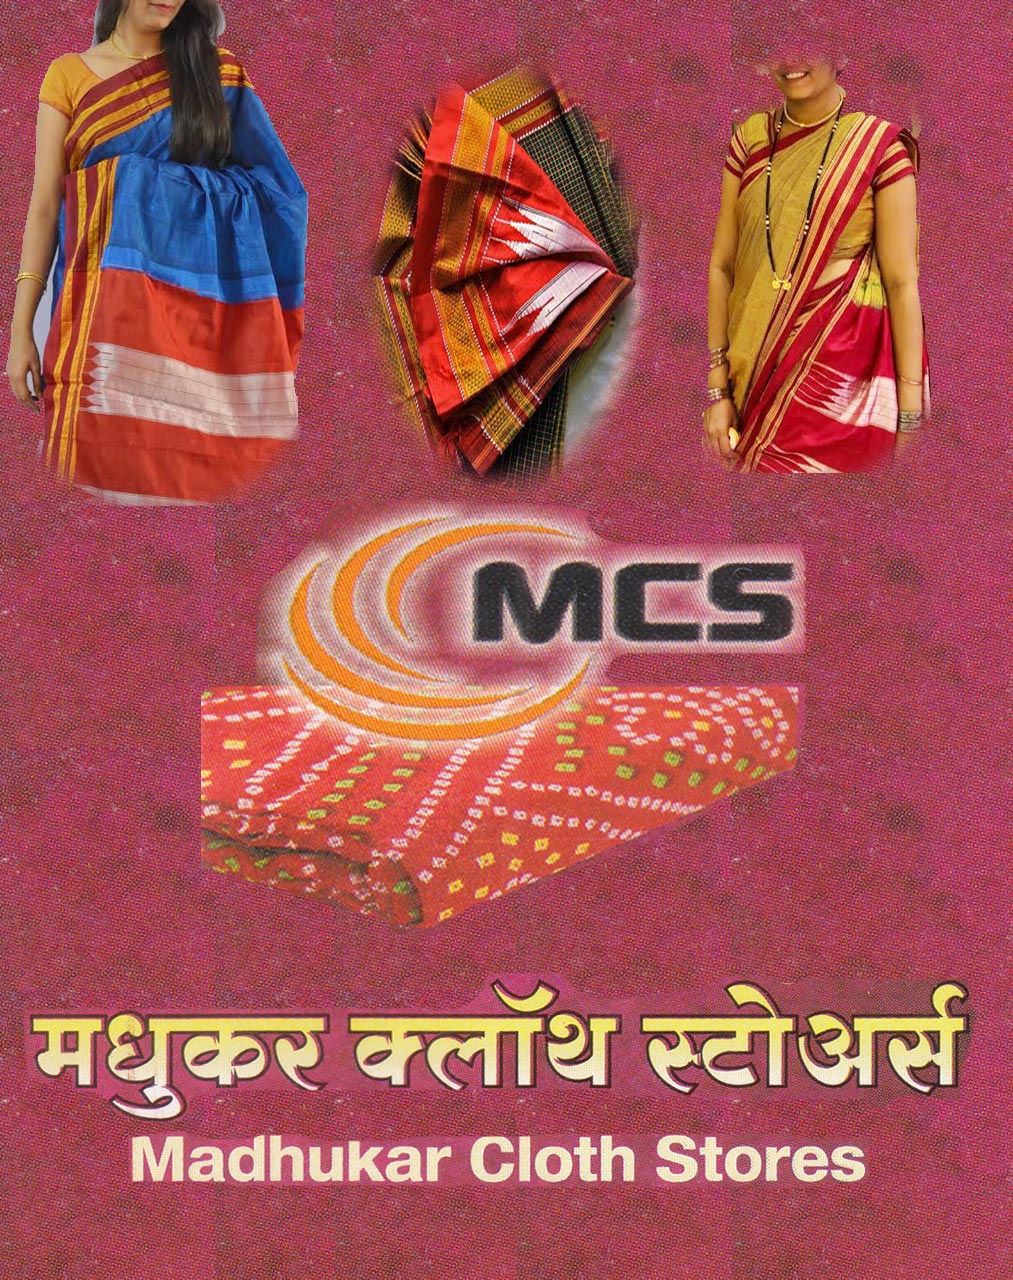 MADHUKAR CLOTH STORES | SolapurMall.com